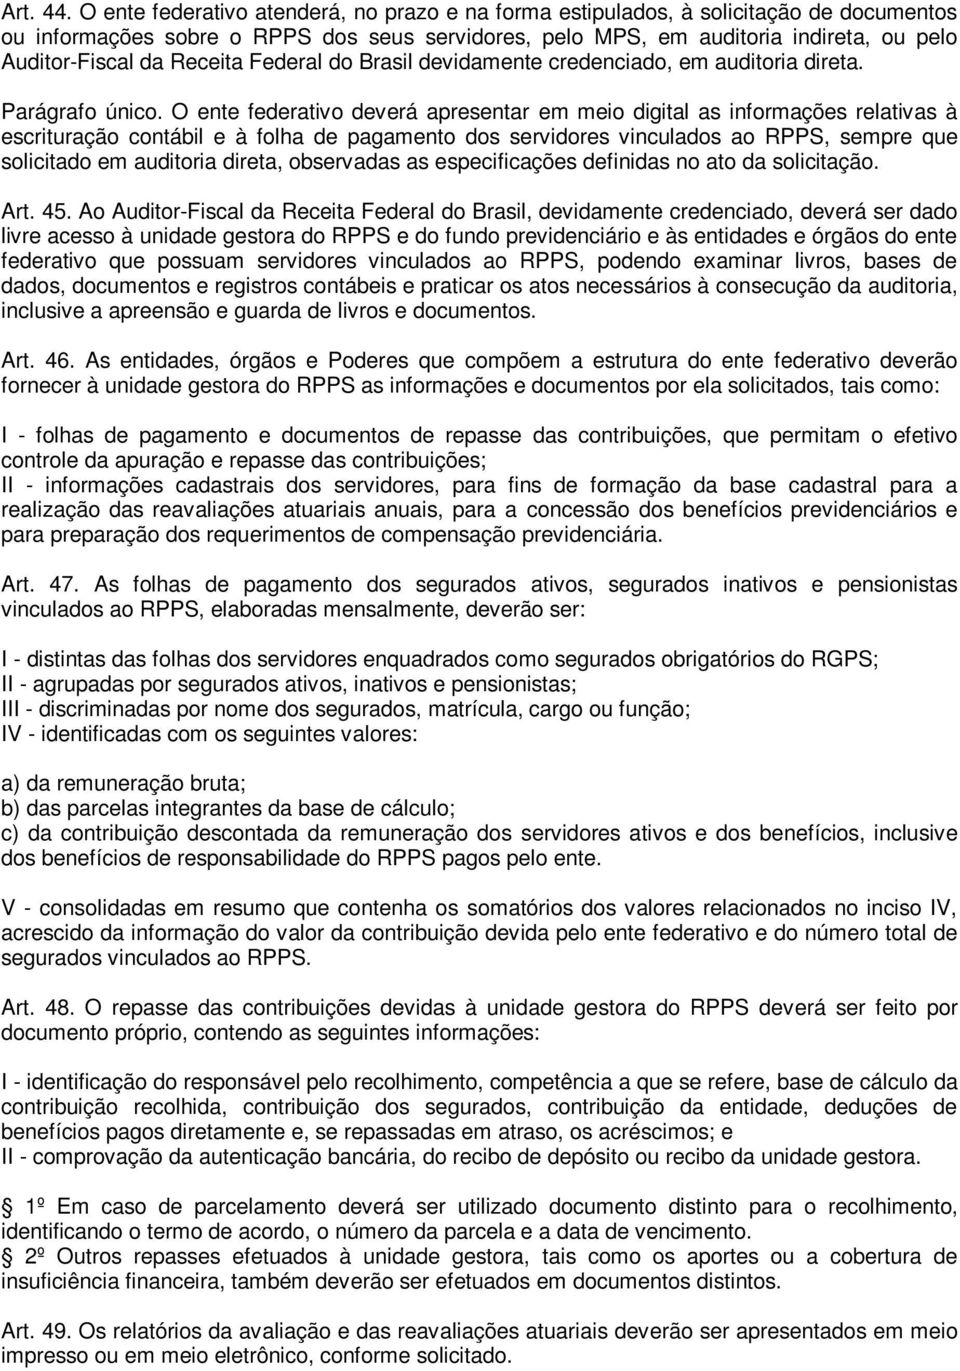 Receita Federal do Brasil devidamente credenciado, em auditoria direta. Parágrafo único.